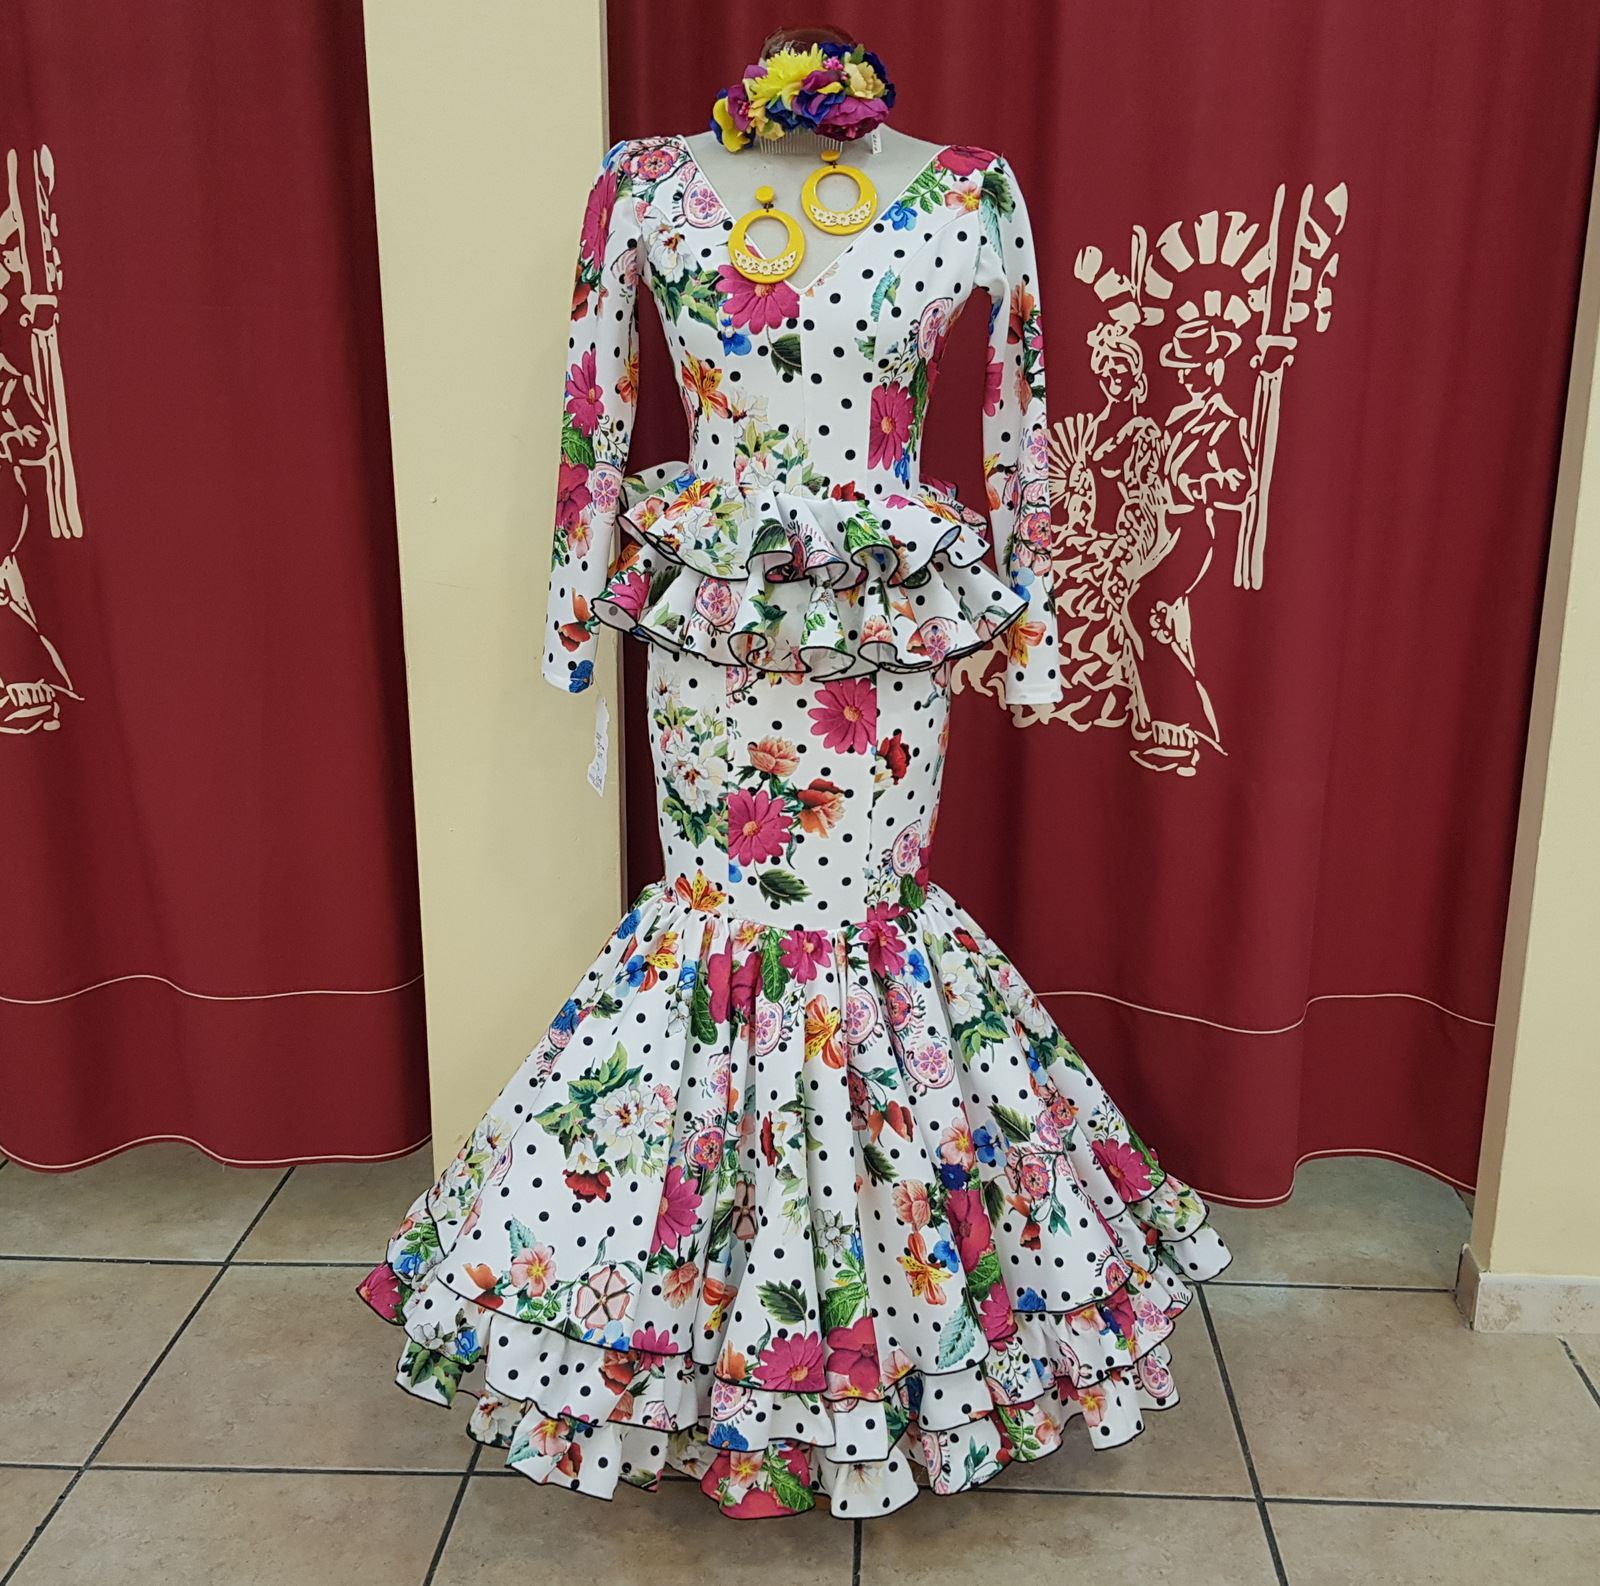 PEDROCHE GITANA Y FLAMENCO - Moda flamenca y campero - Complementos